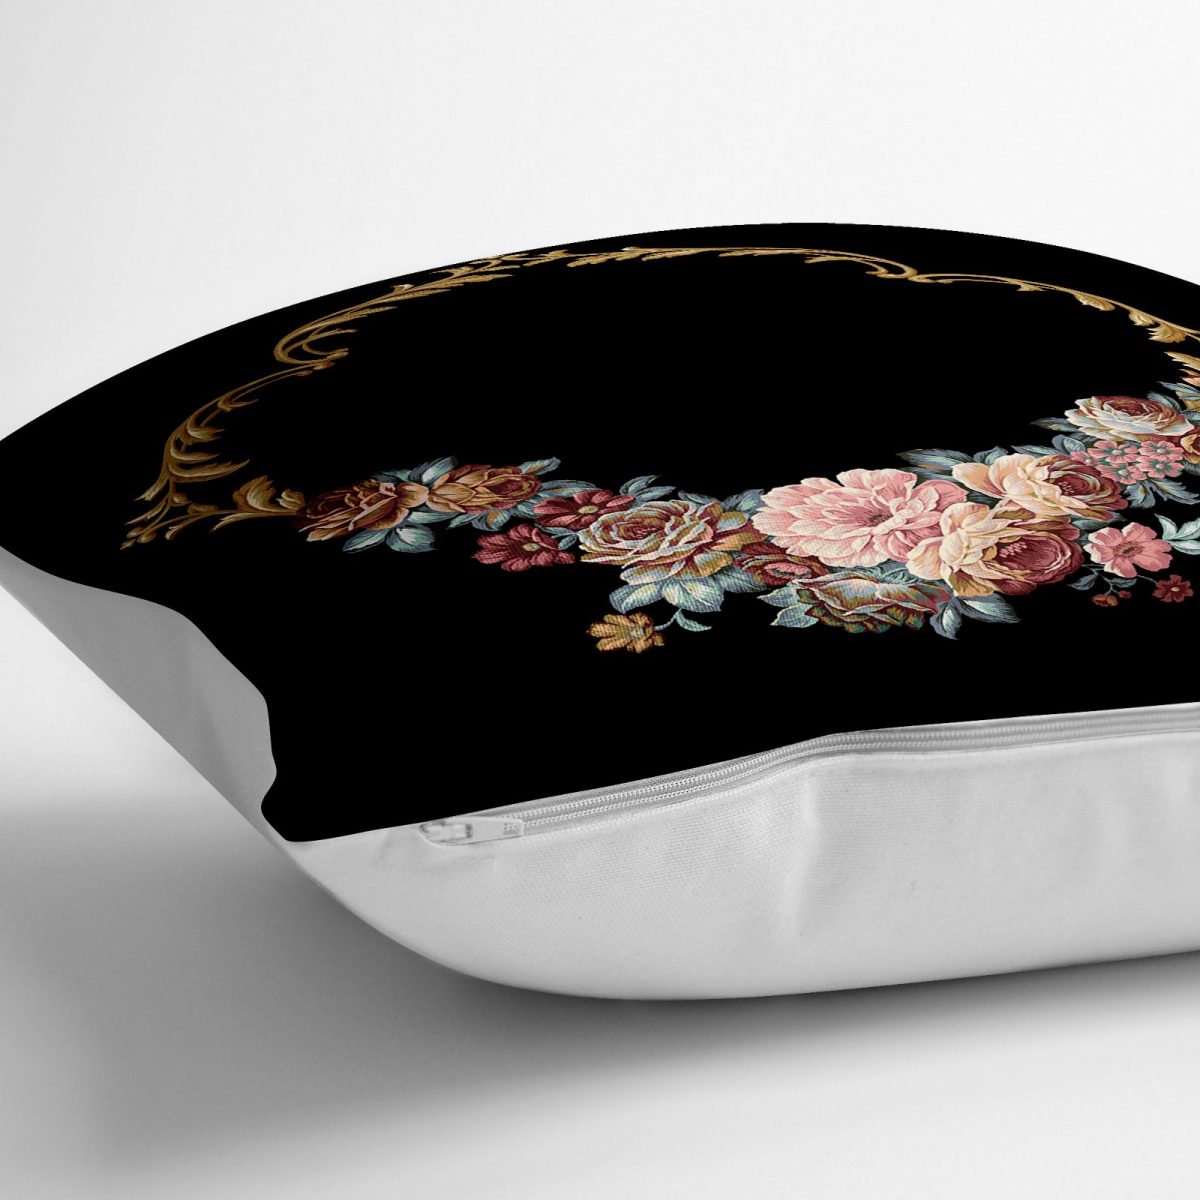 Siyah Zeminde Otantik Çiçekler Özel Tasarım Yer Minderi - 70 x 70 cm Realhomes